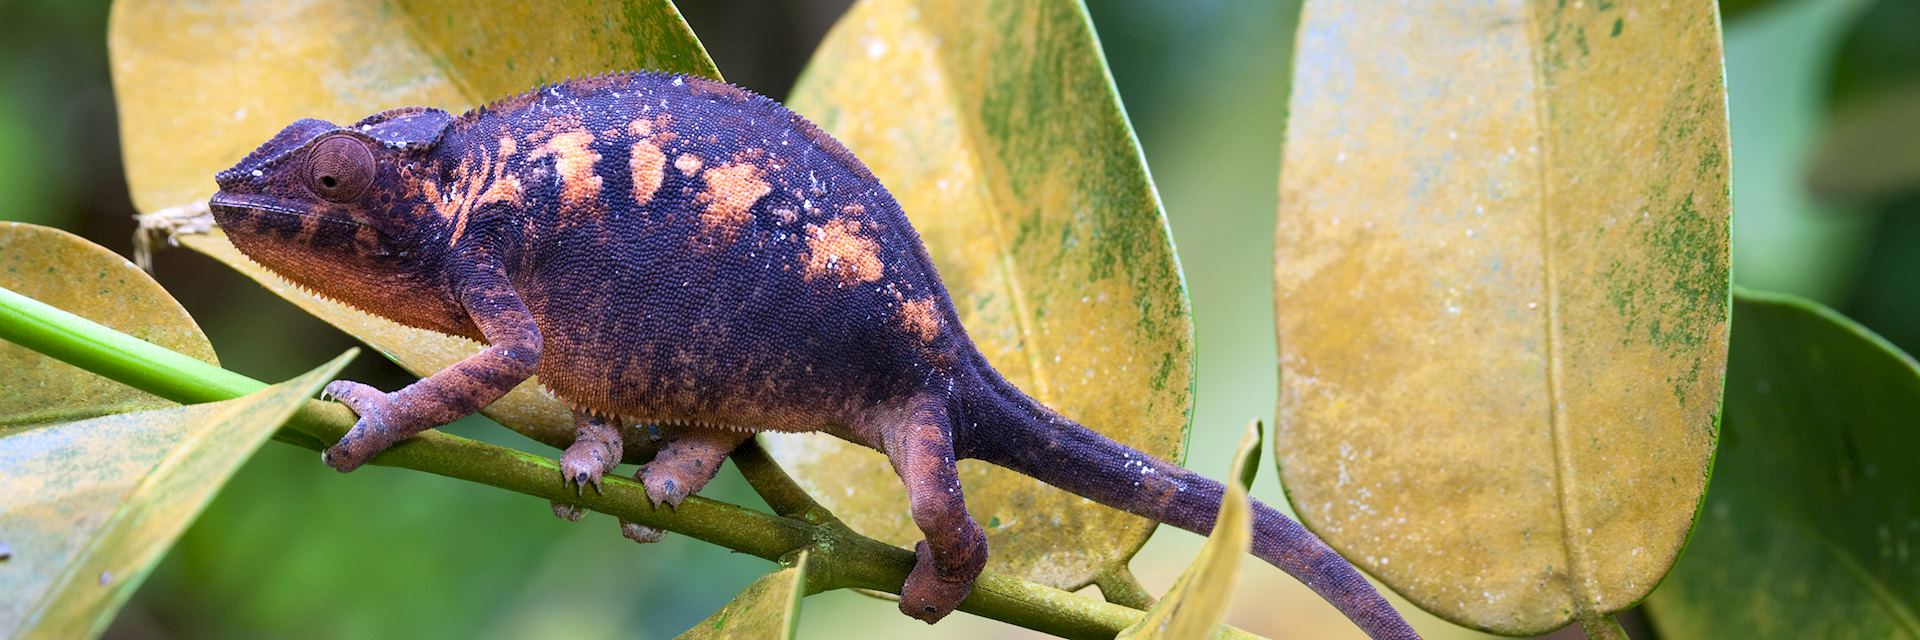 Madagascar chameleon